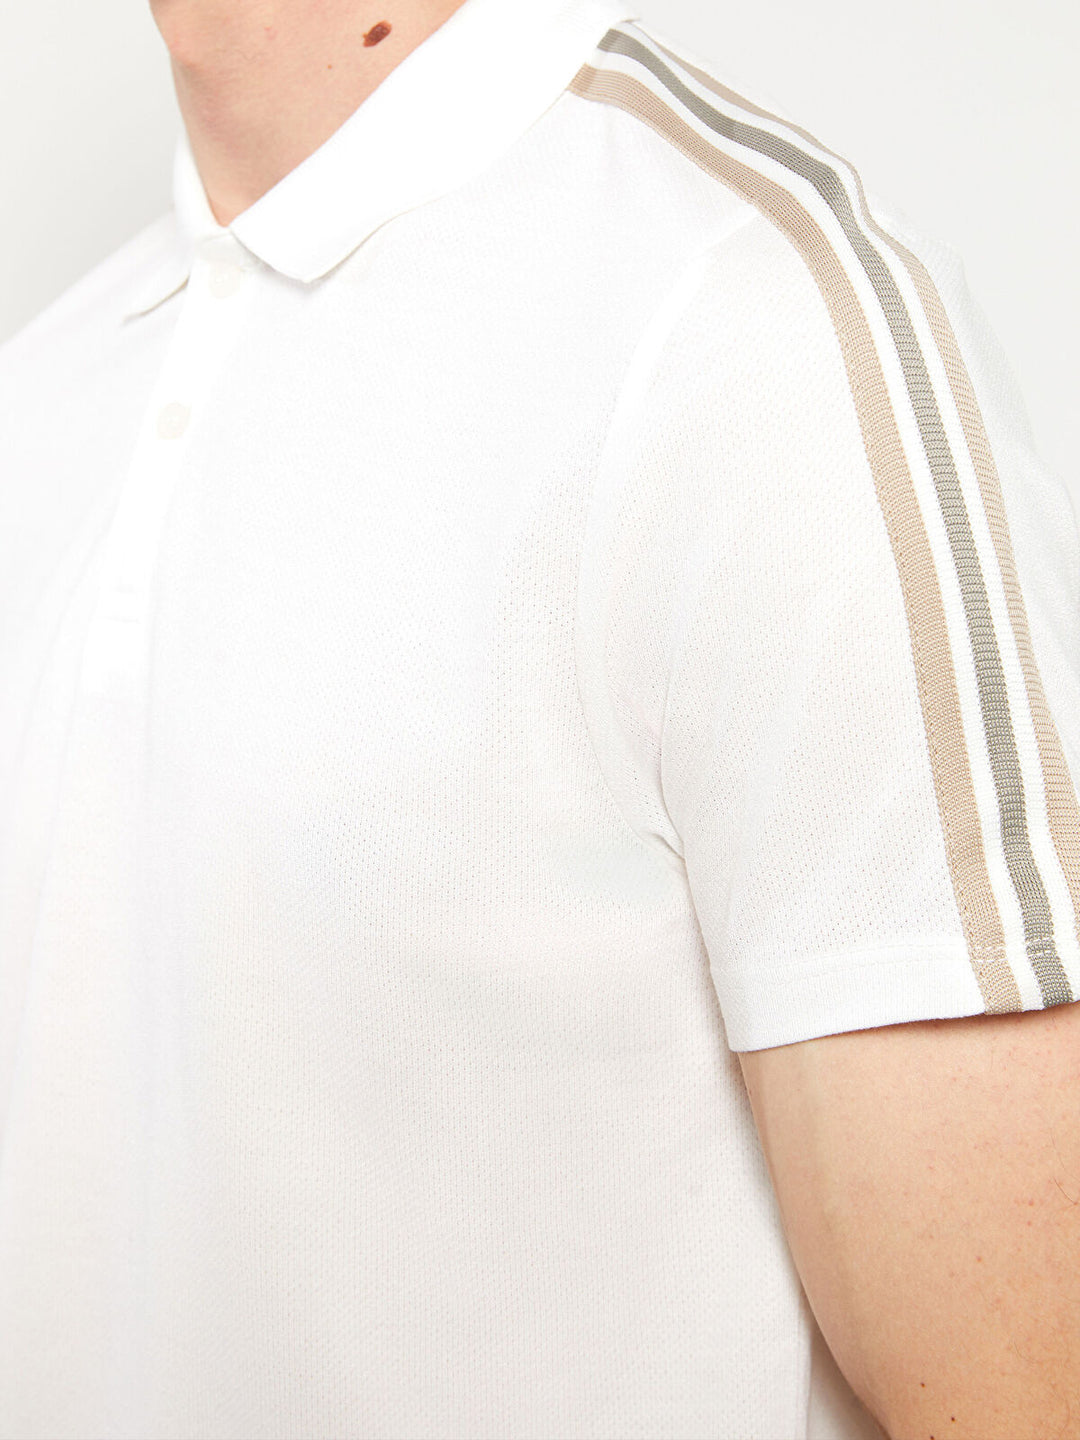 Polo Neck Short Sleeve Piqué Men T-Shirt